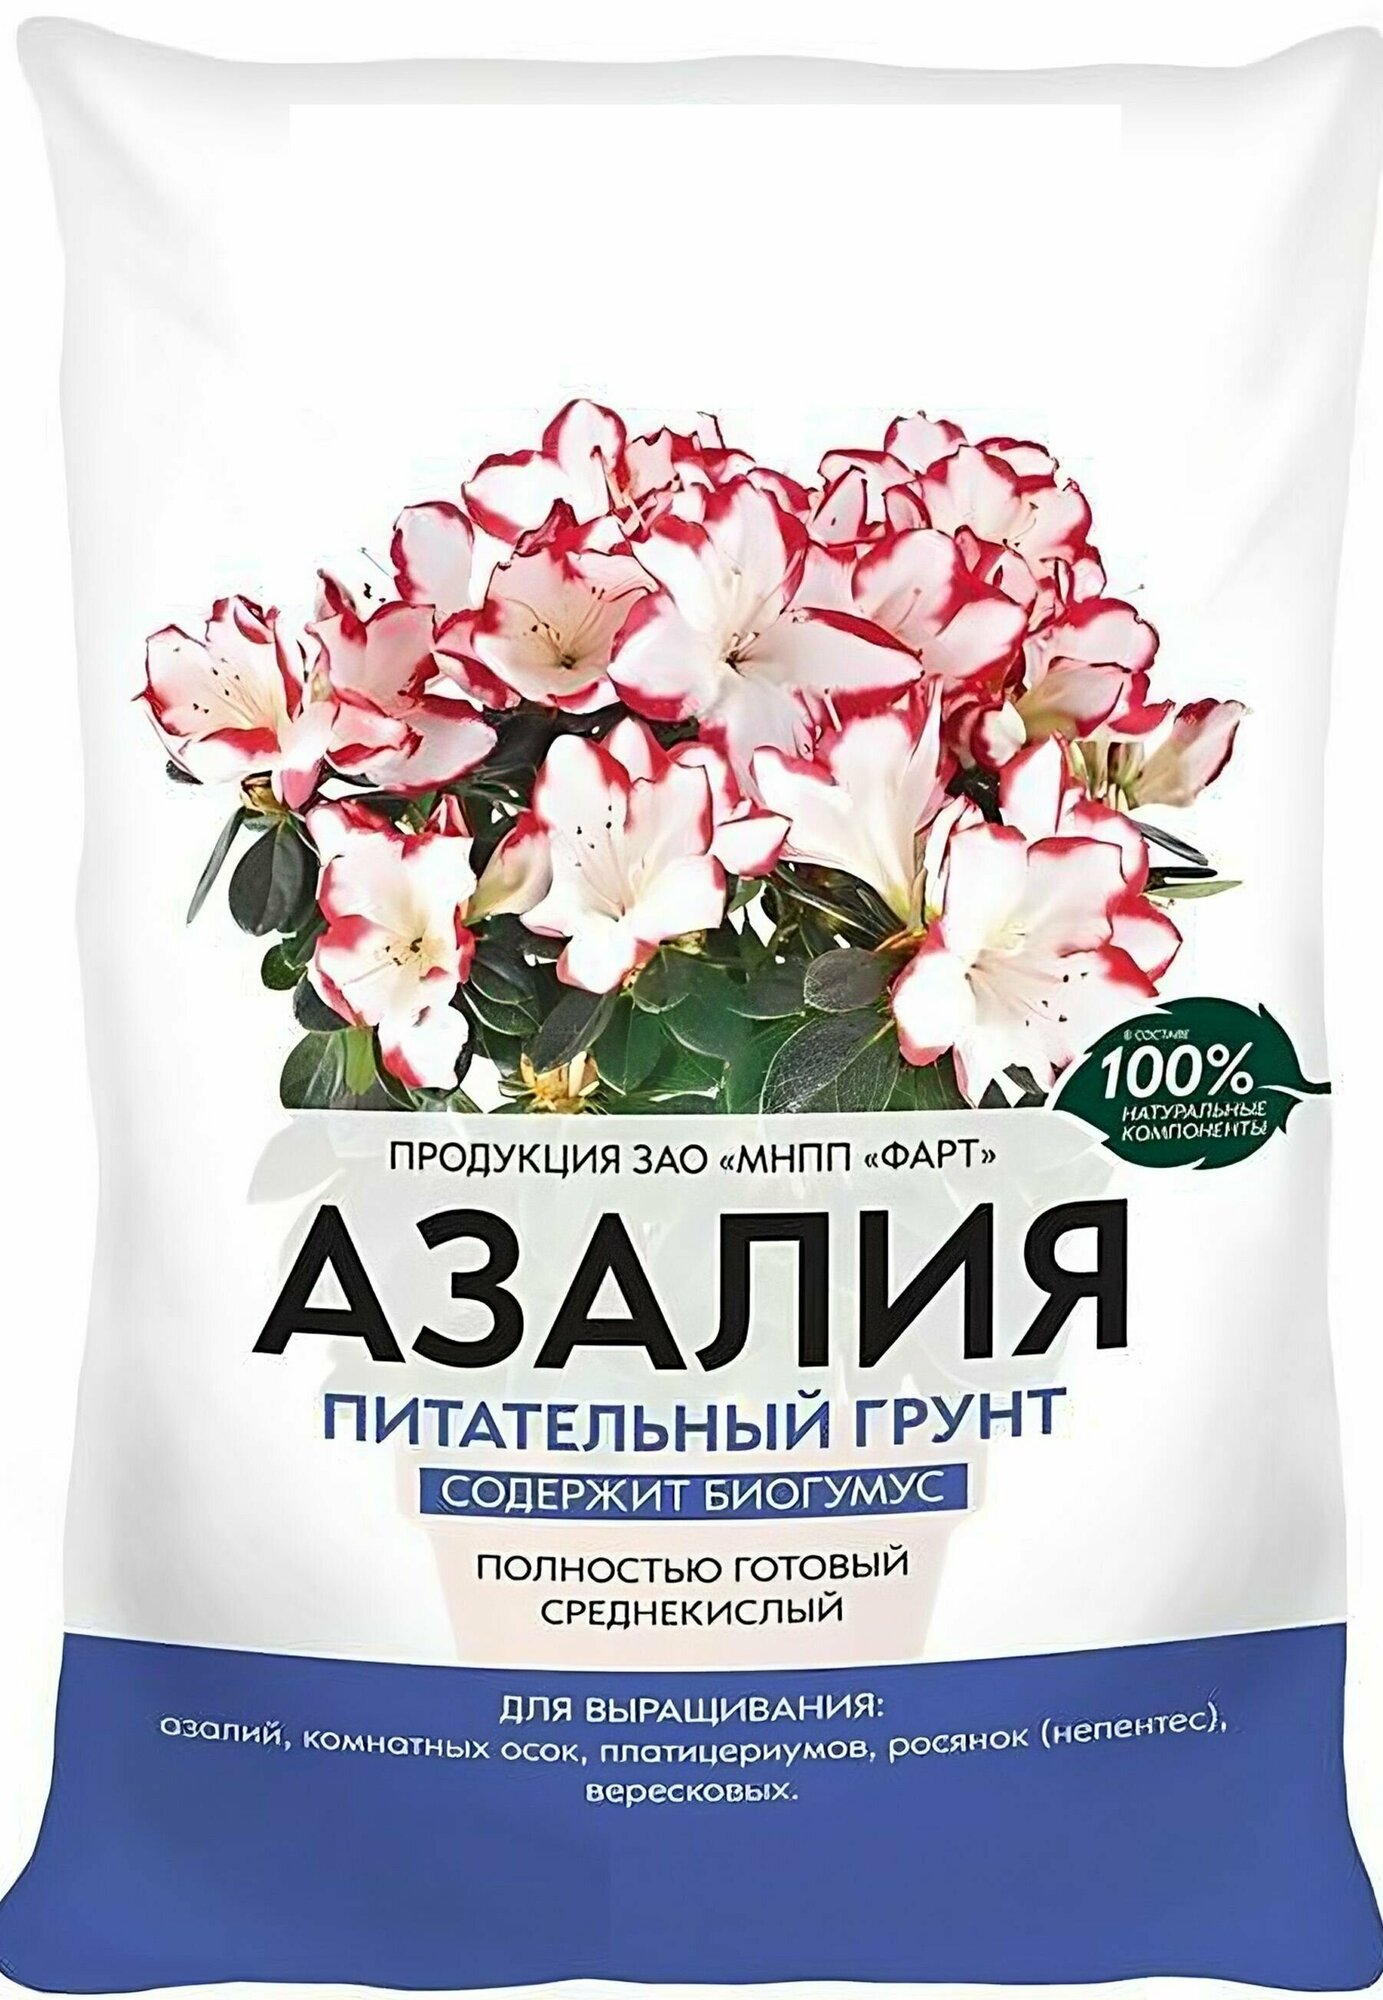 Почвогрунт "Азалия" 2,5 л. Готовая рыхлая почва для выращивания цветов, росянок, платицериумов, осок, а также рододендронов и вересковых культур